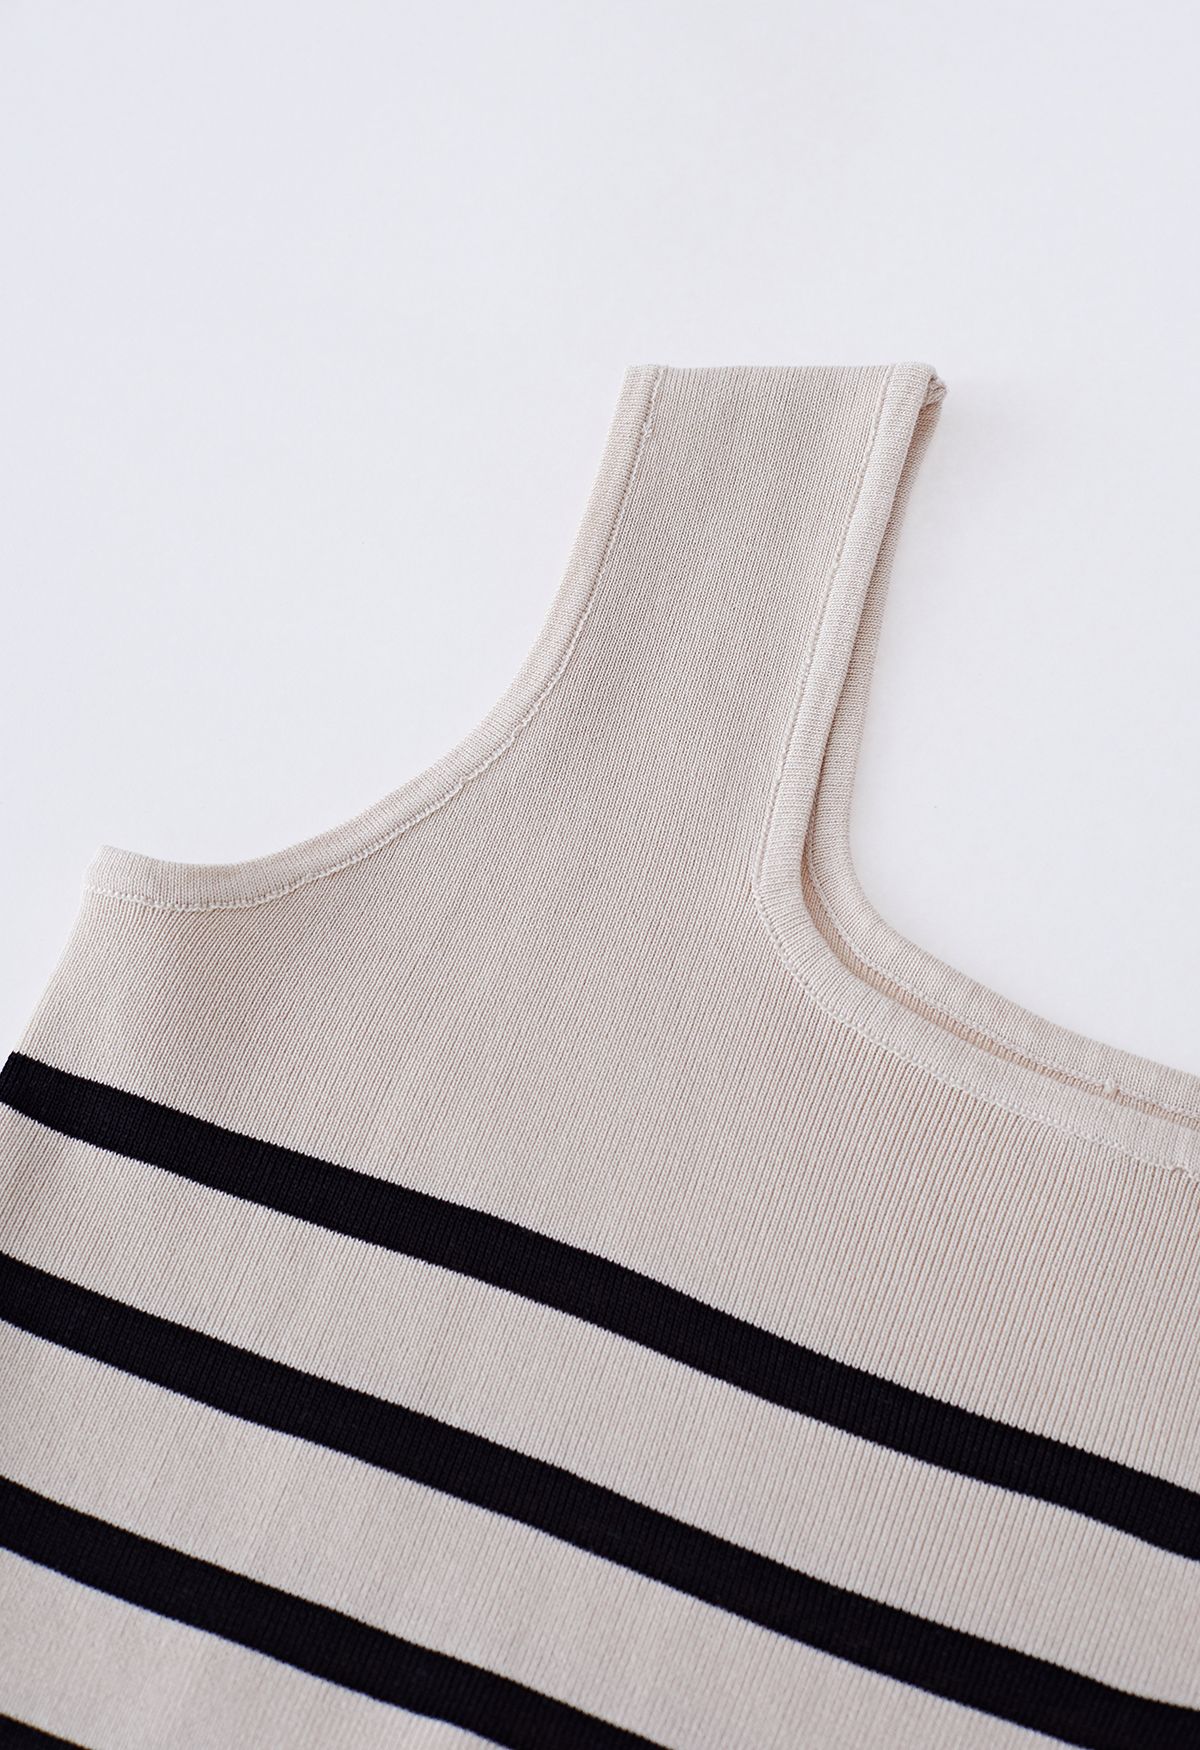 Basic Stripe Printed Knit Tank Top